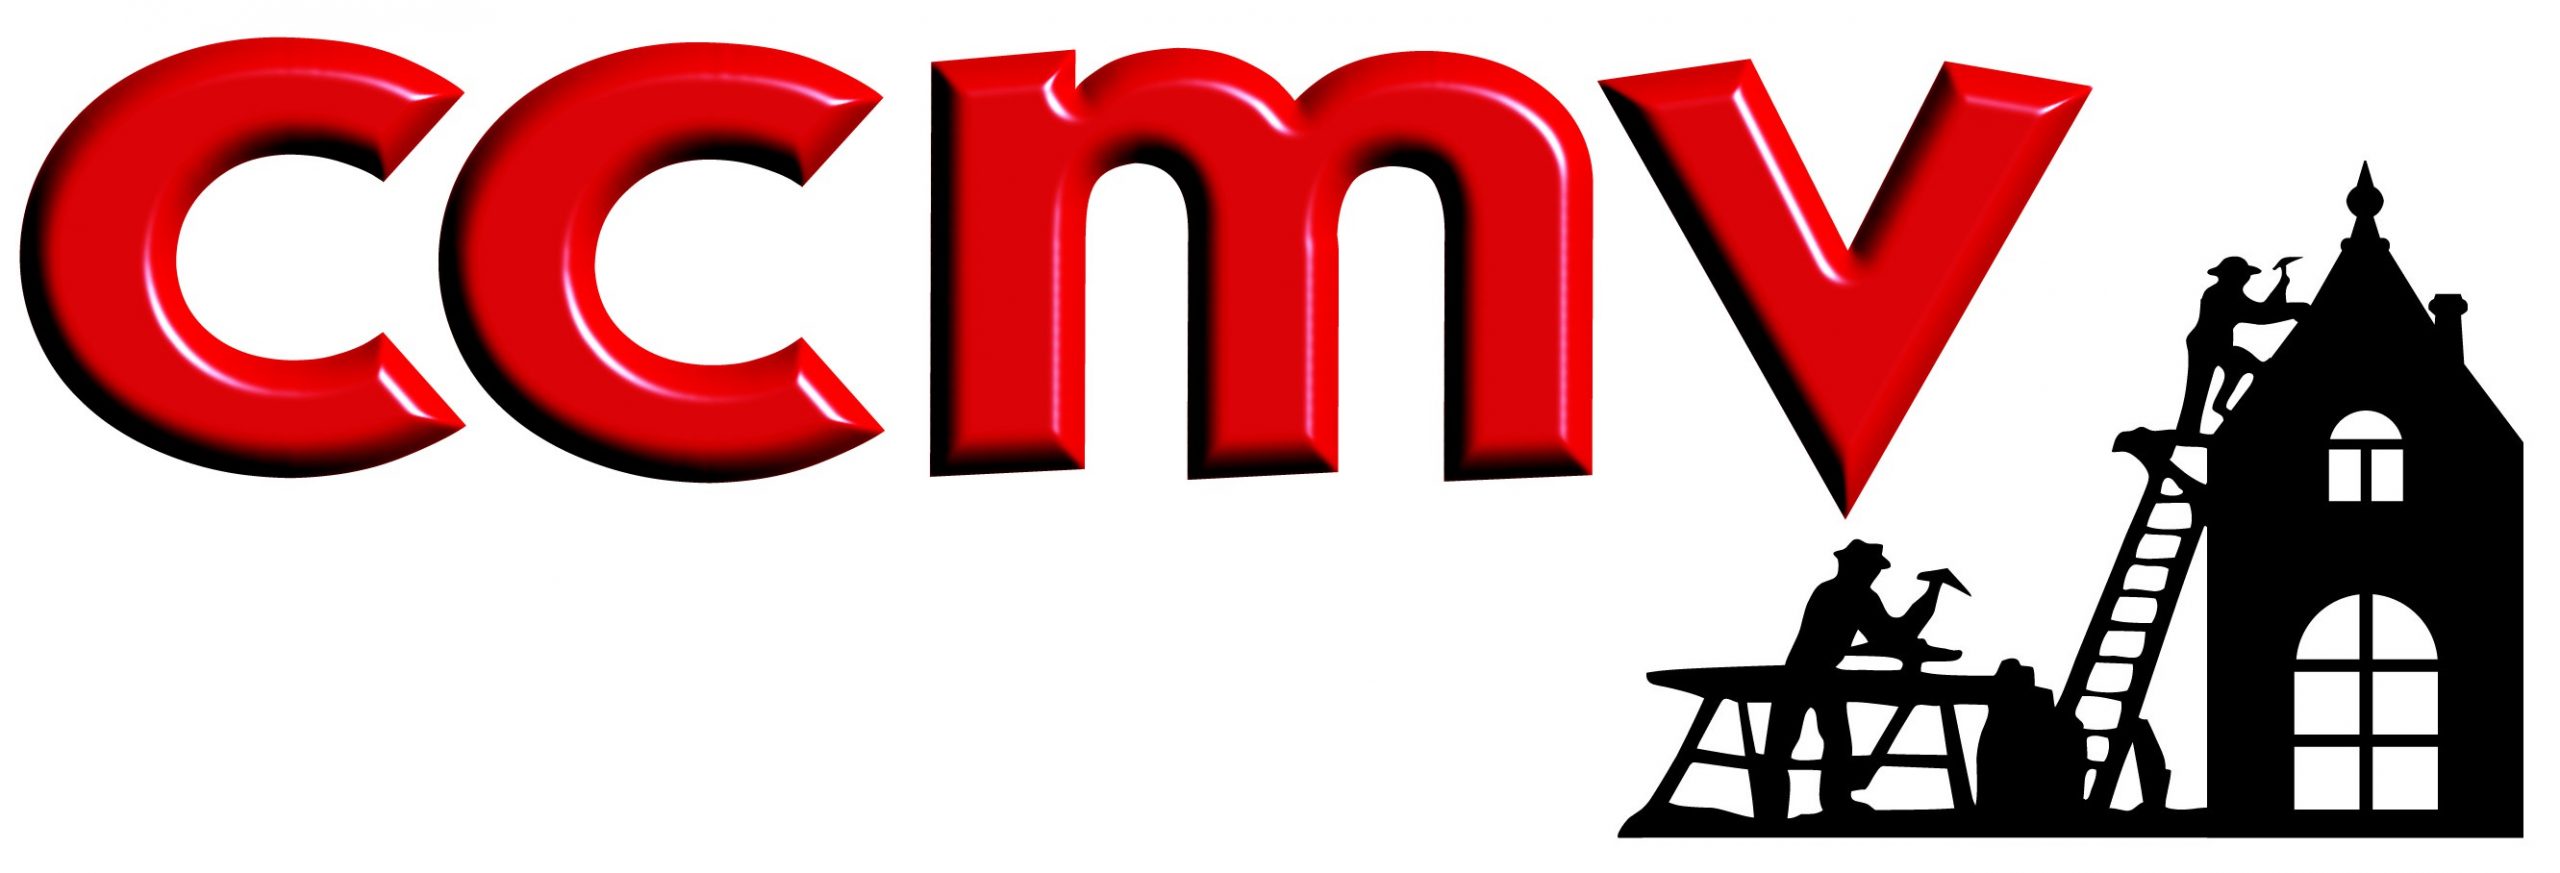 Logo-CCMV-61